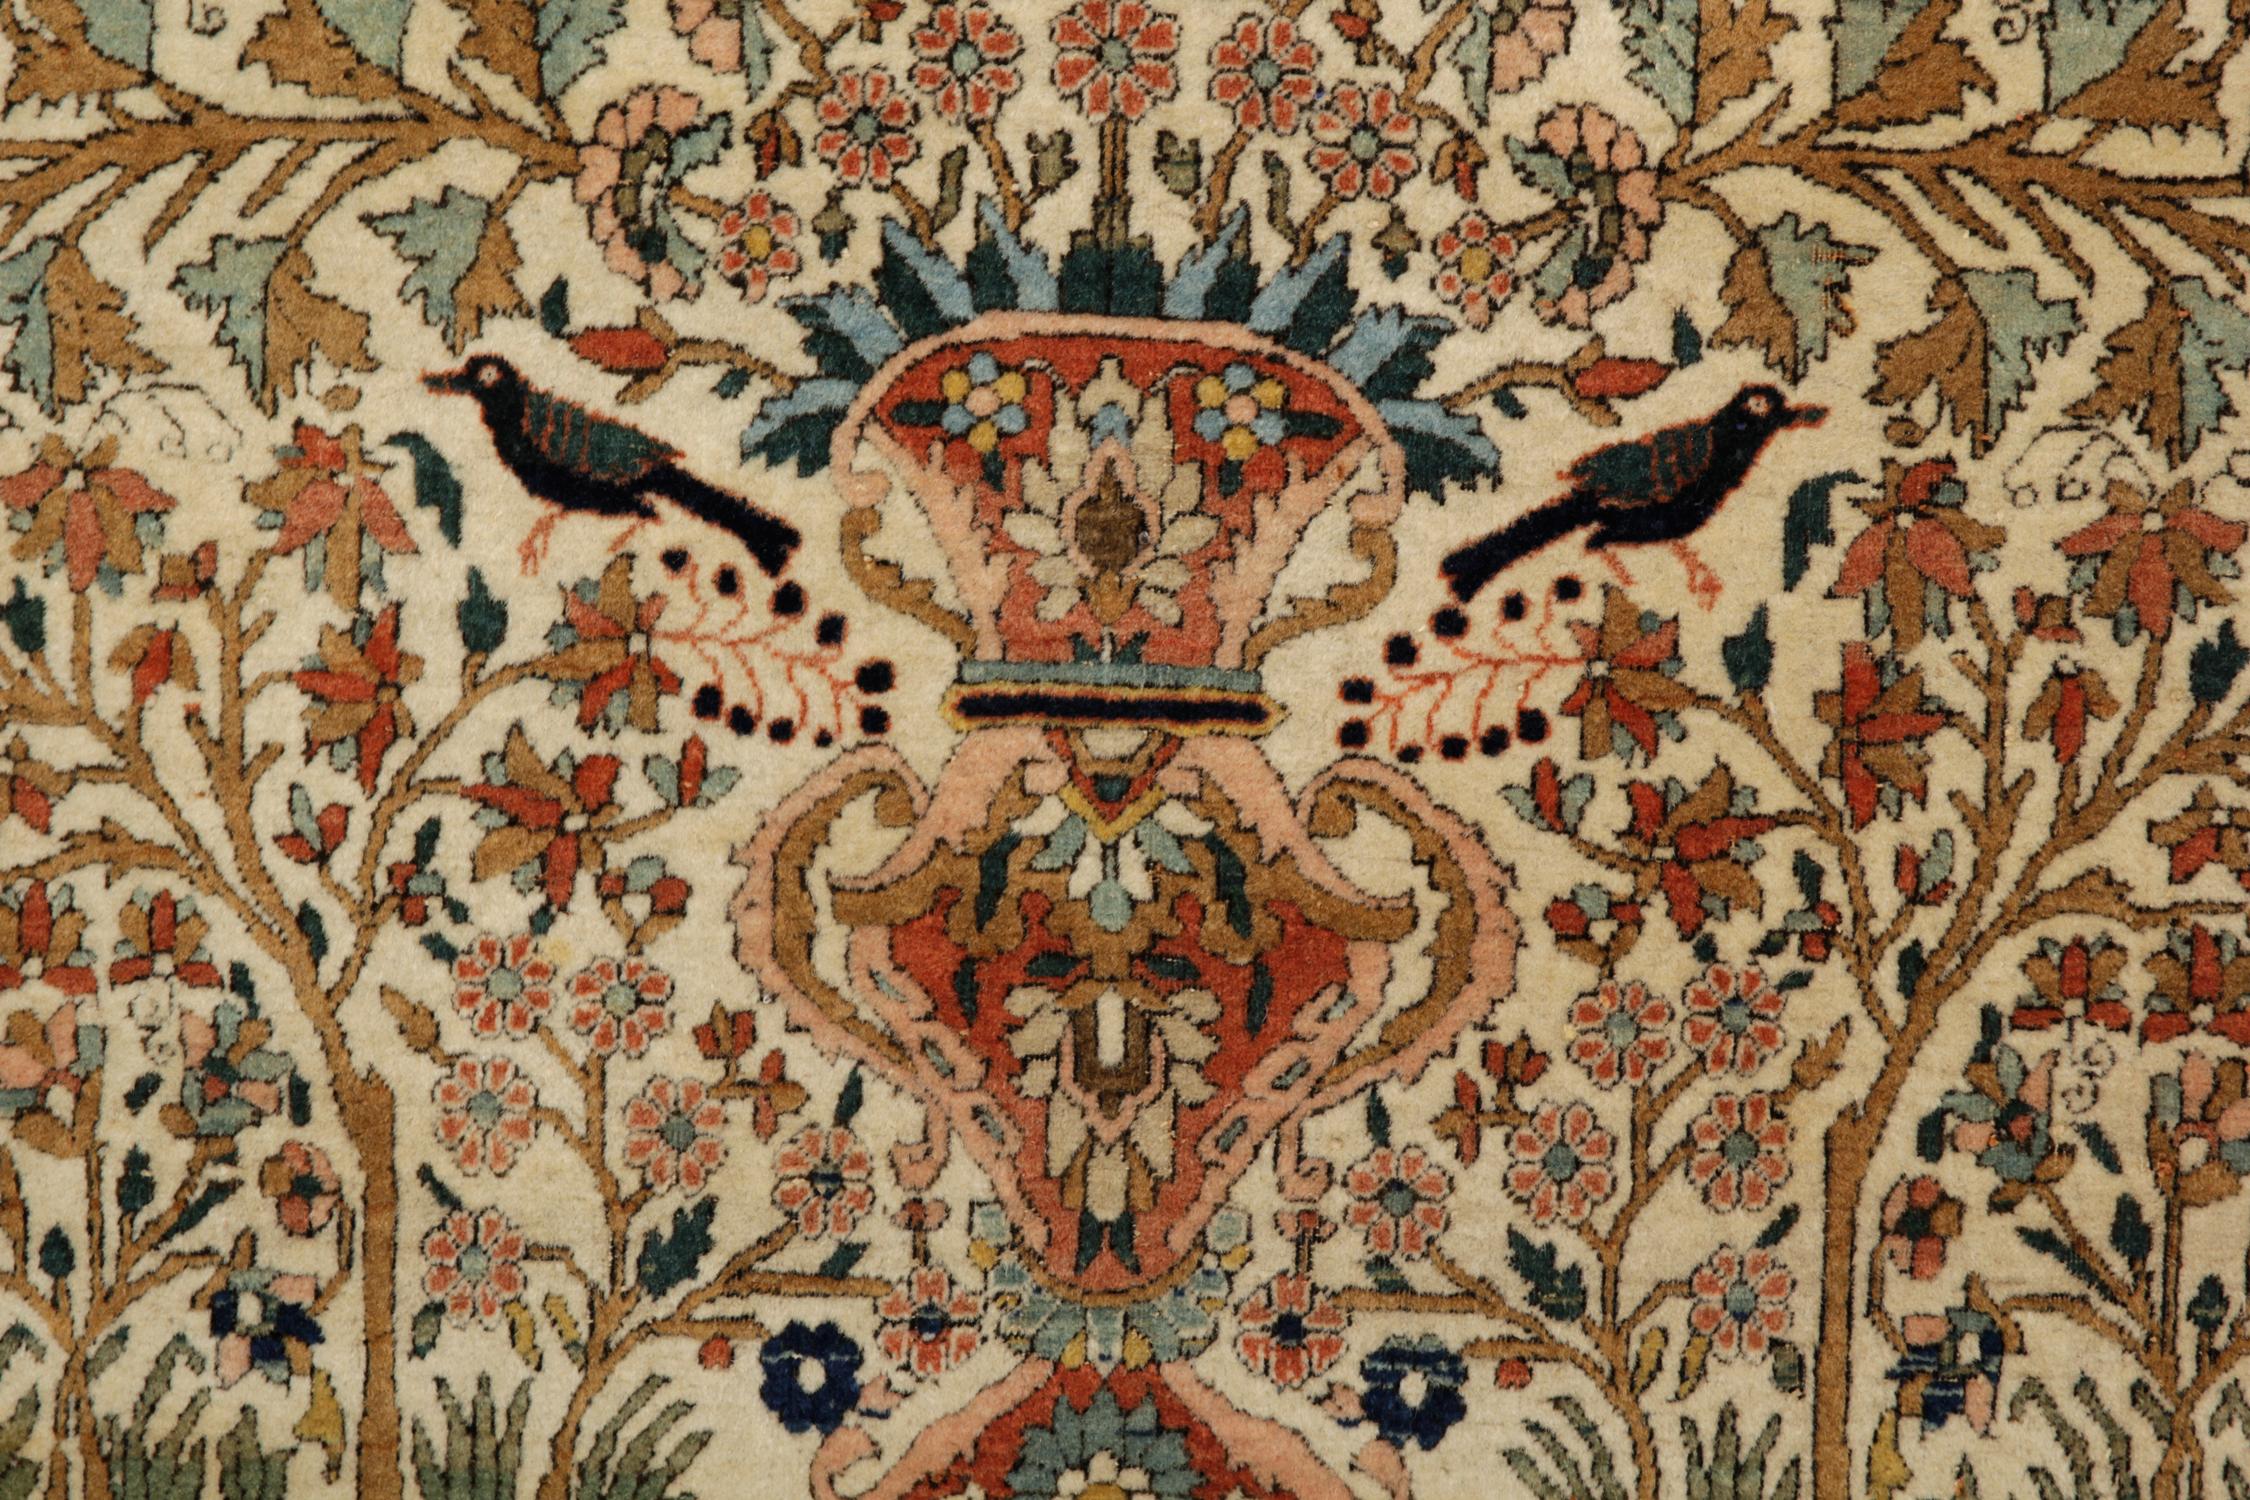 Ce tapis en laine est un bel exemple de tapis ancien tissé à la fin du XIXe siècle, vers 1880. Le motif présente un vase tissé de manière complexe. Des motifs floraux et botaniques très détaillés partent du haut du vase et sont tissés dans des